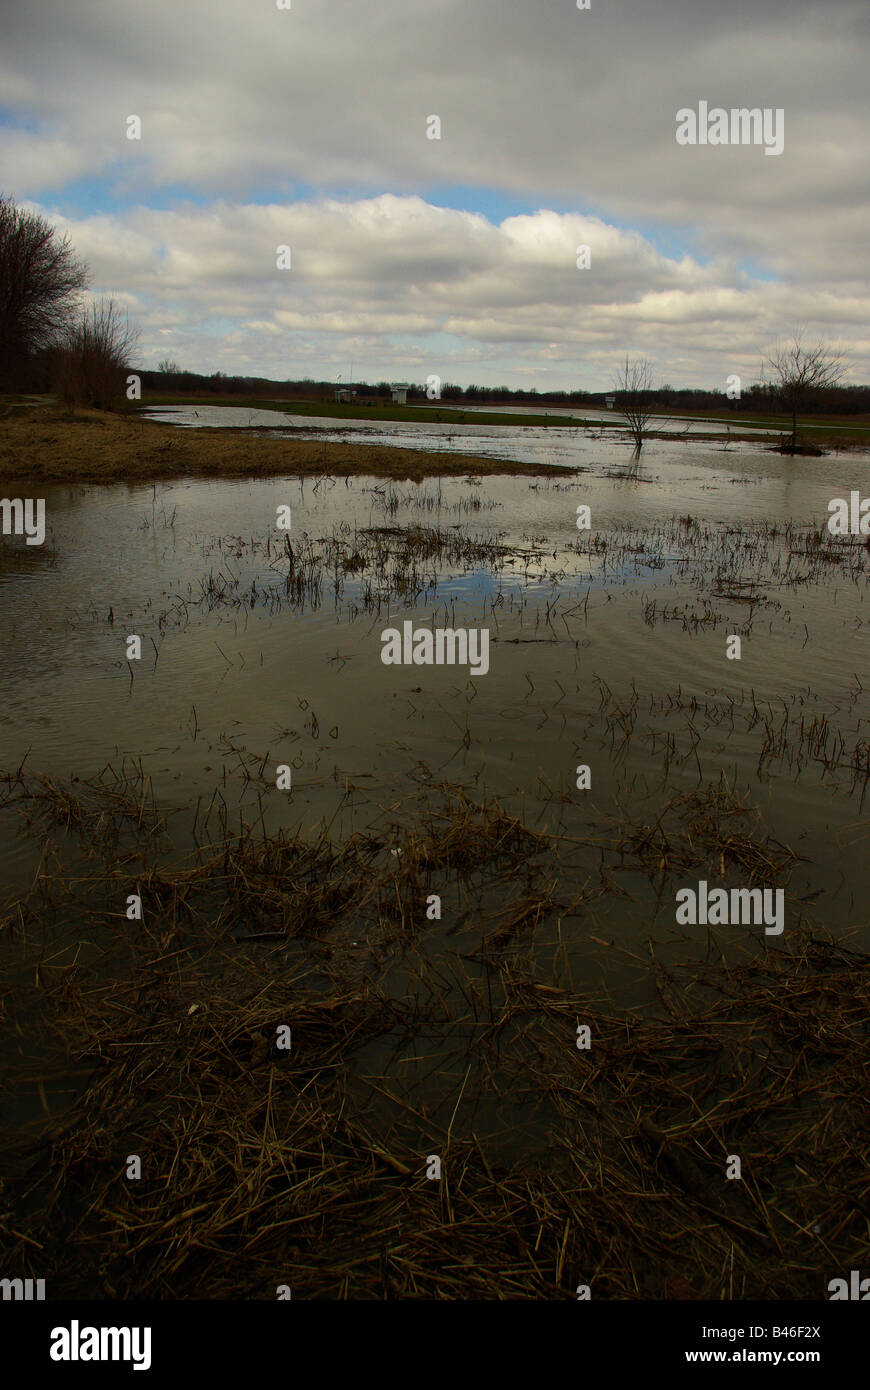 Marais inondés le long de la rivière Wabash reflètent le ciel bleu nuageux Banque D'Images